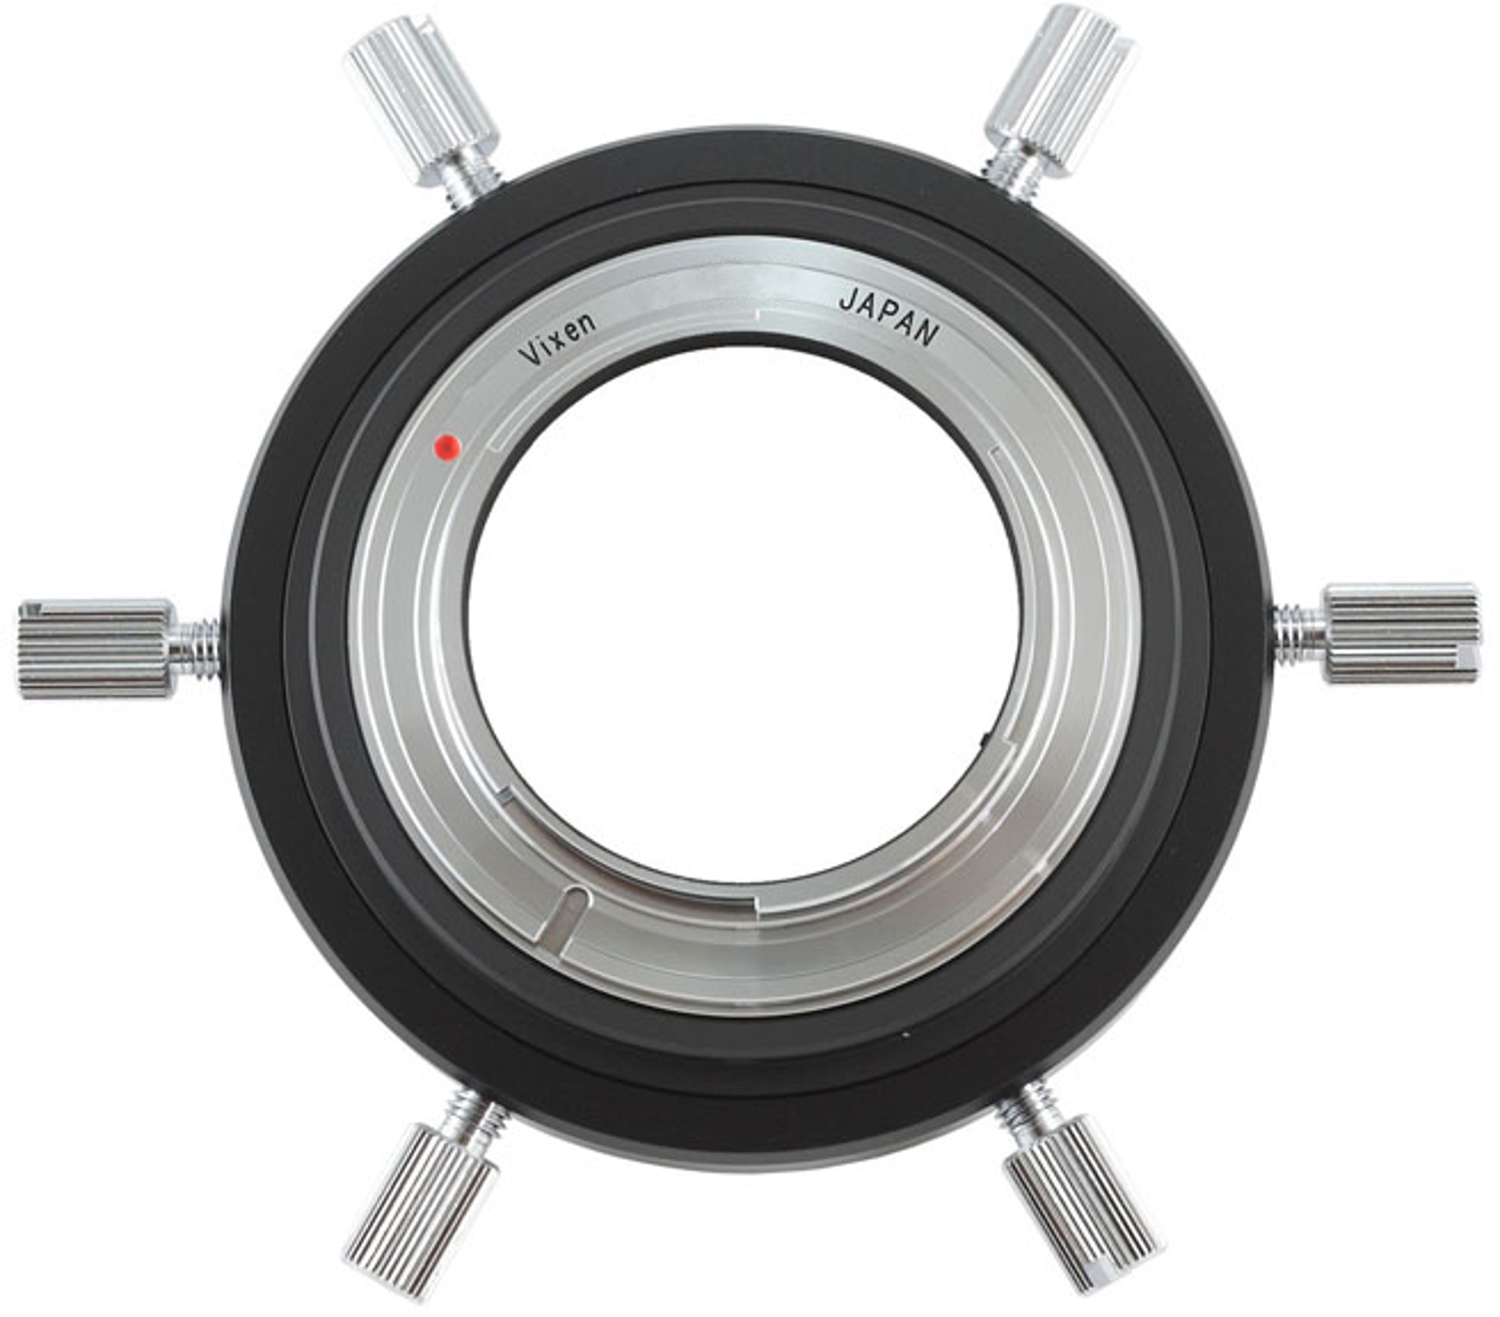 Vixen 60DA Focal adaptor for Canon EOS Cameras